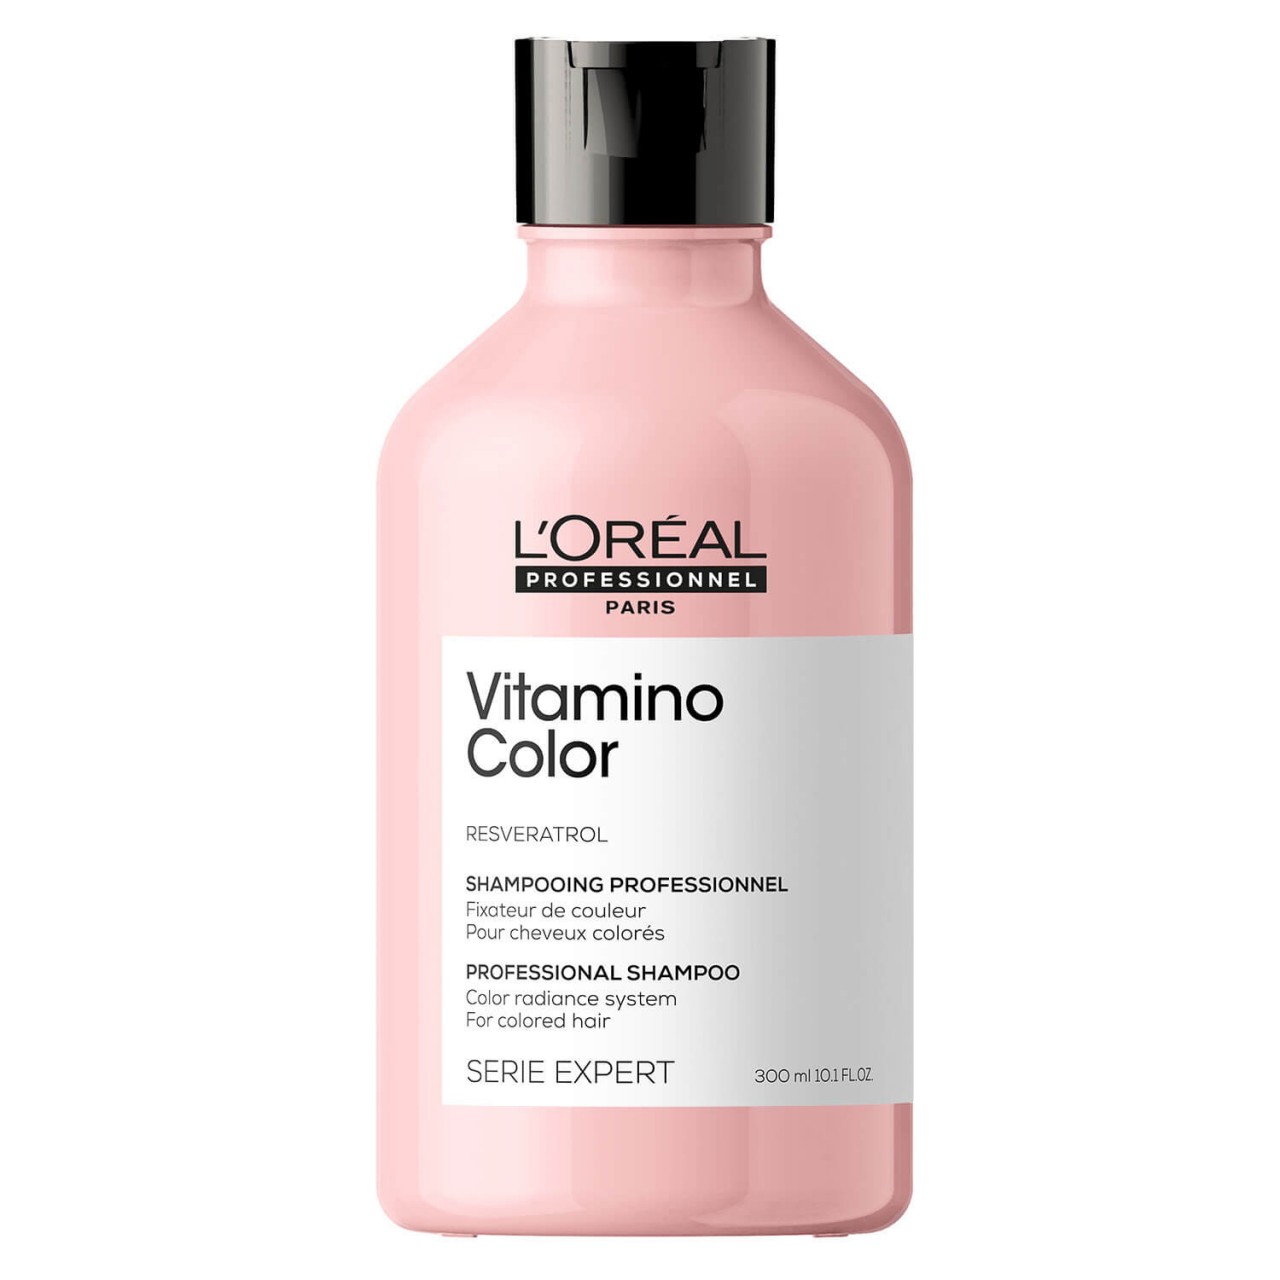 Série Expert Vitamino Color - Professional Shampoo von L'Oréal Professionnel